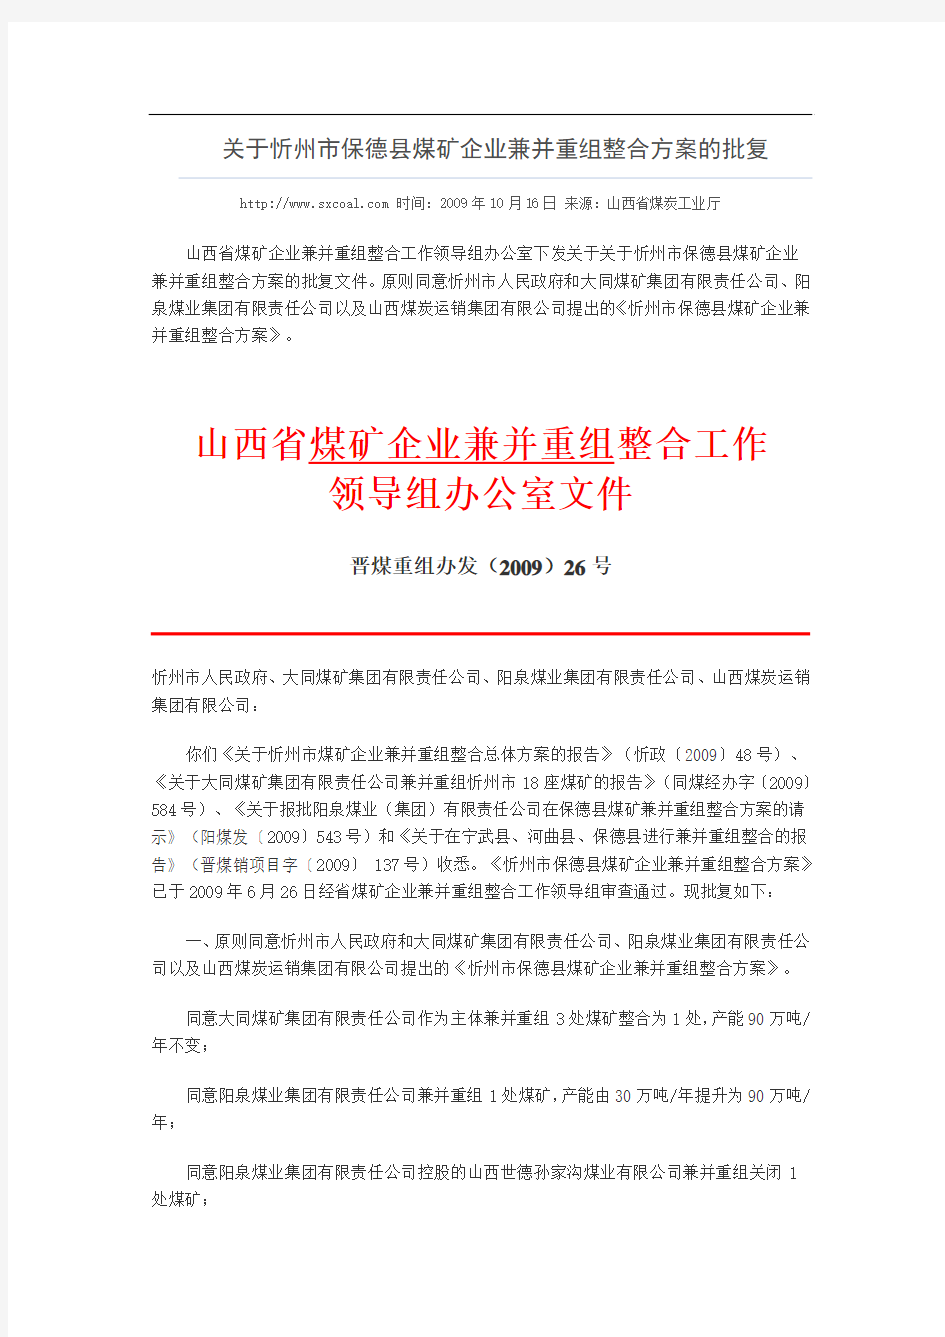 山西省煤矿企业兼并并重组工作领导组办公室《关于忻州市保德县煤矿企业兼并重组整合方案的批复》